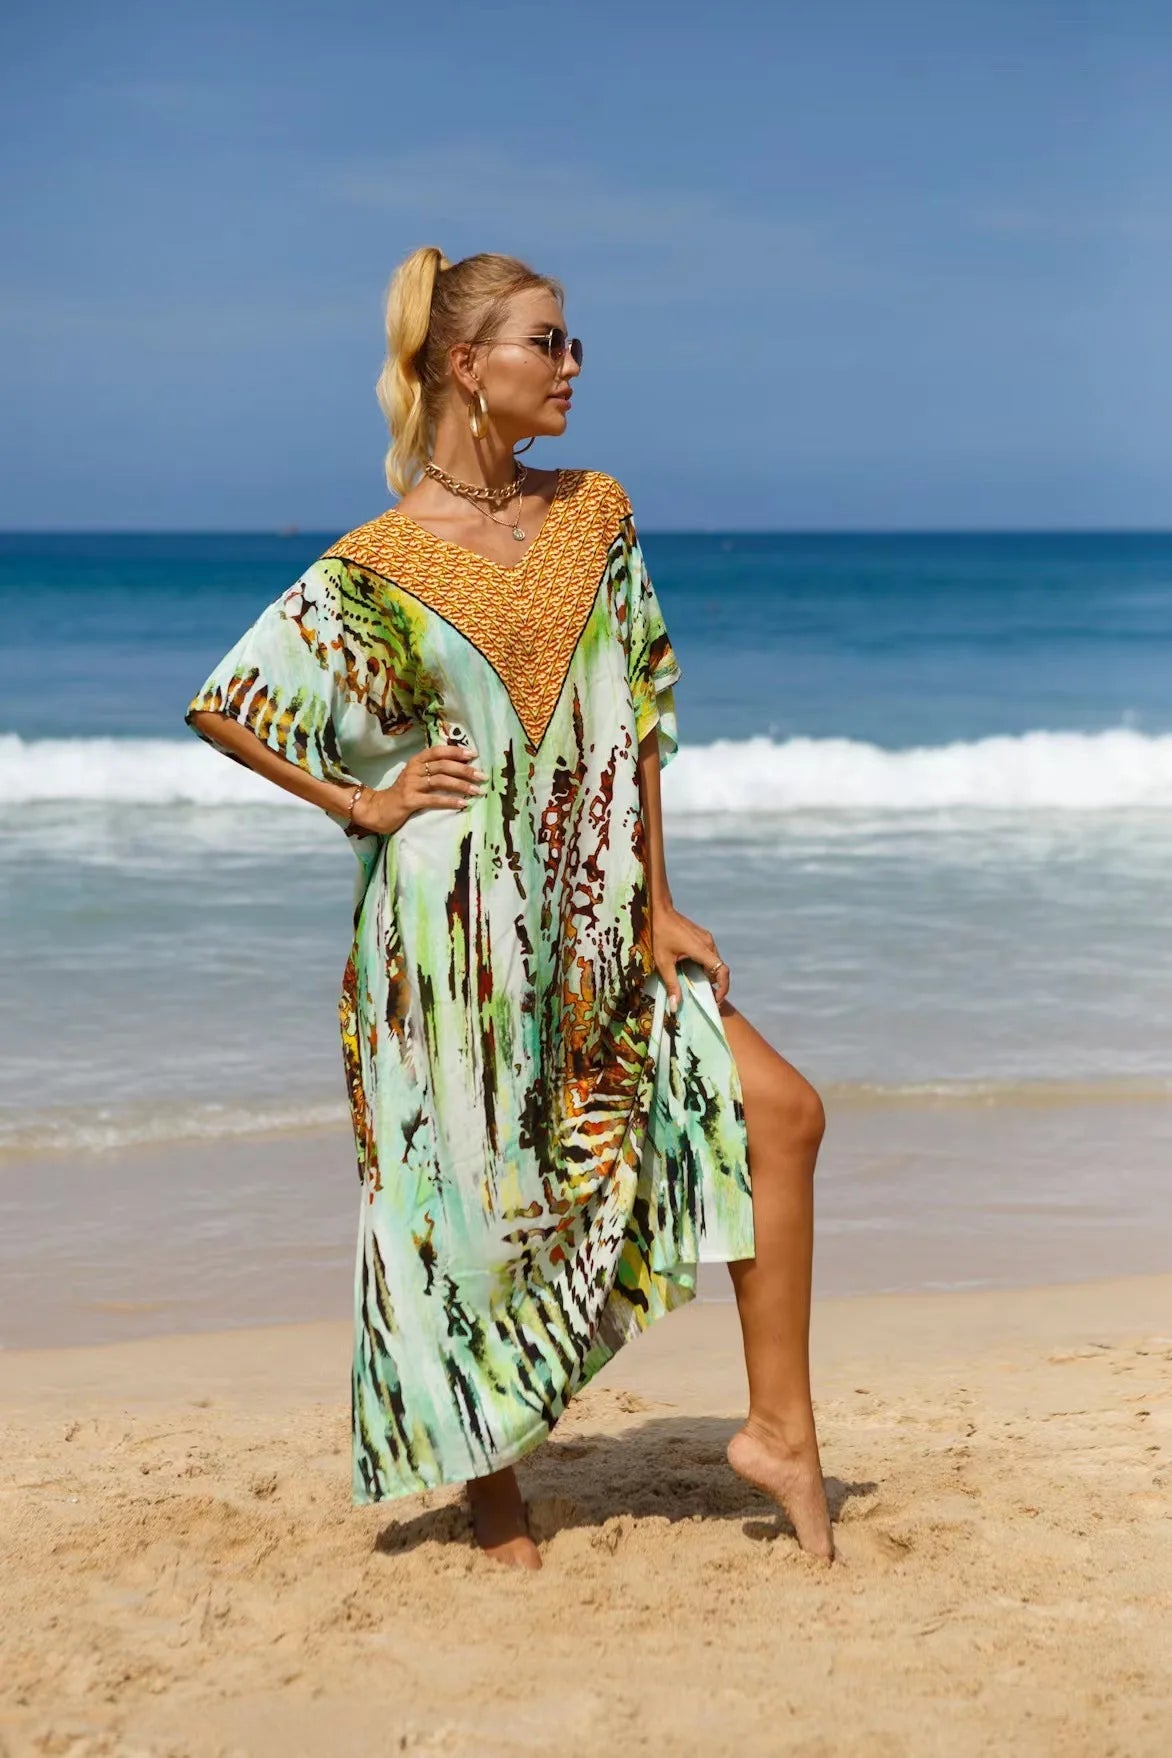 Maxi Robe Kaftans for Swimwear Bliss model 15 Beachwear Australia